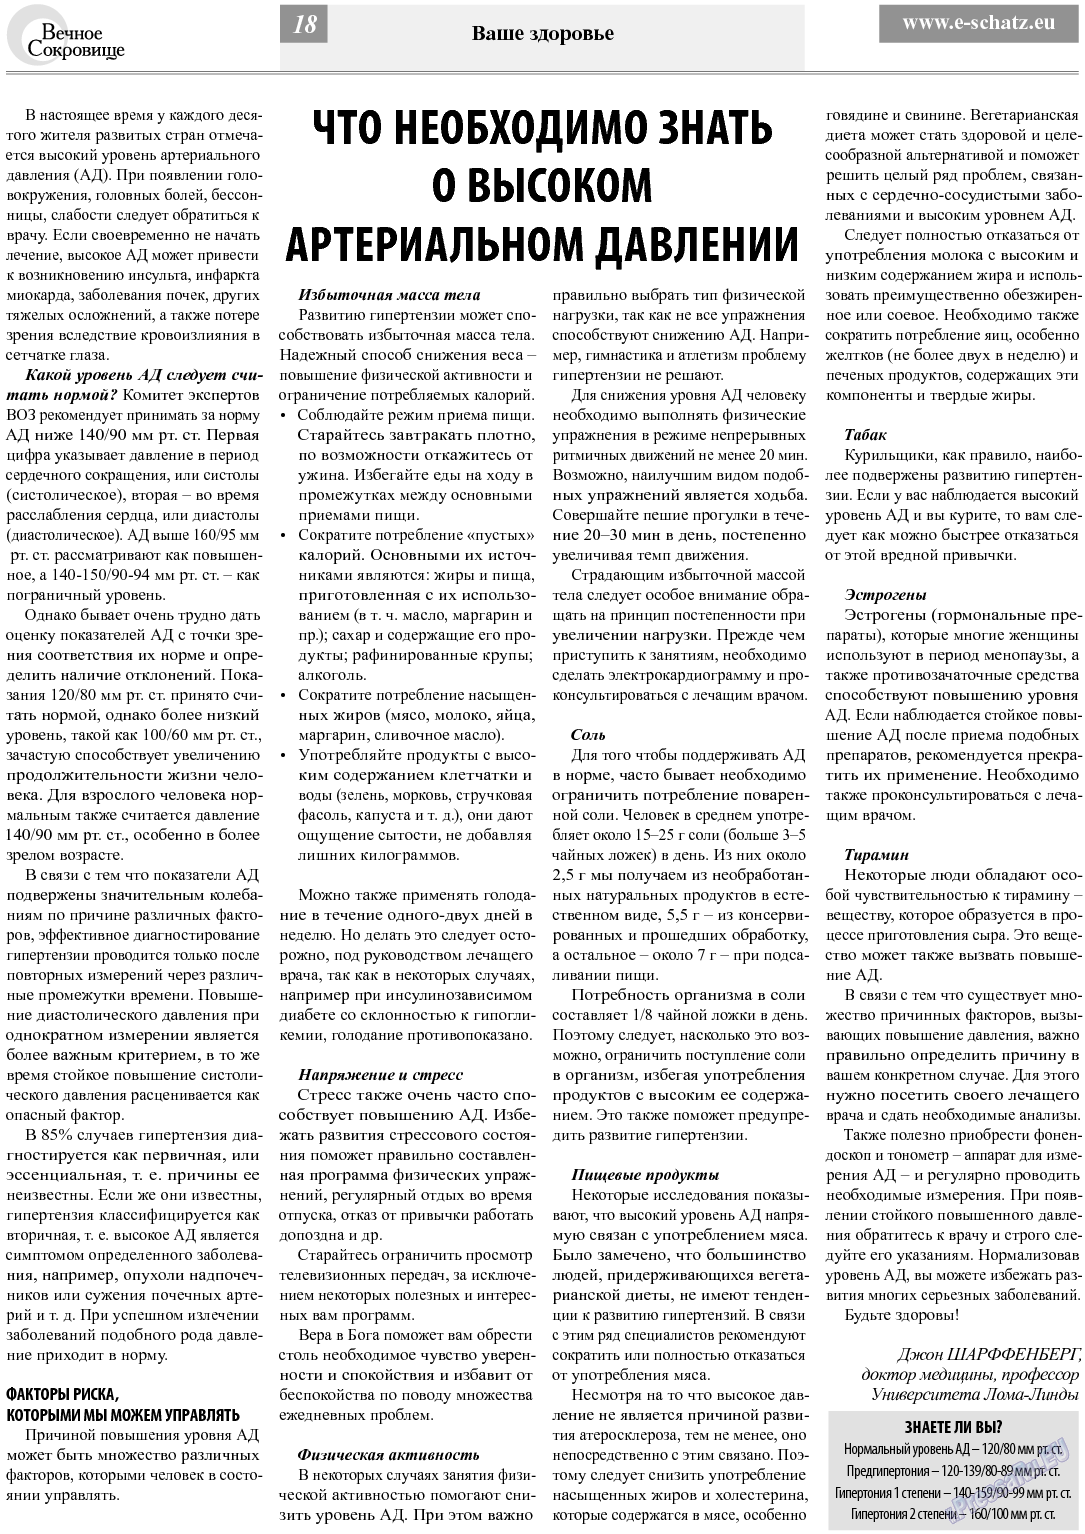 Вечное сокровище (газета). 2013 год, номер 5, стр. 18